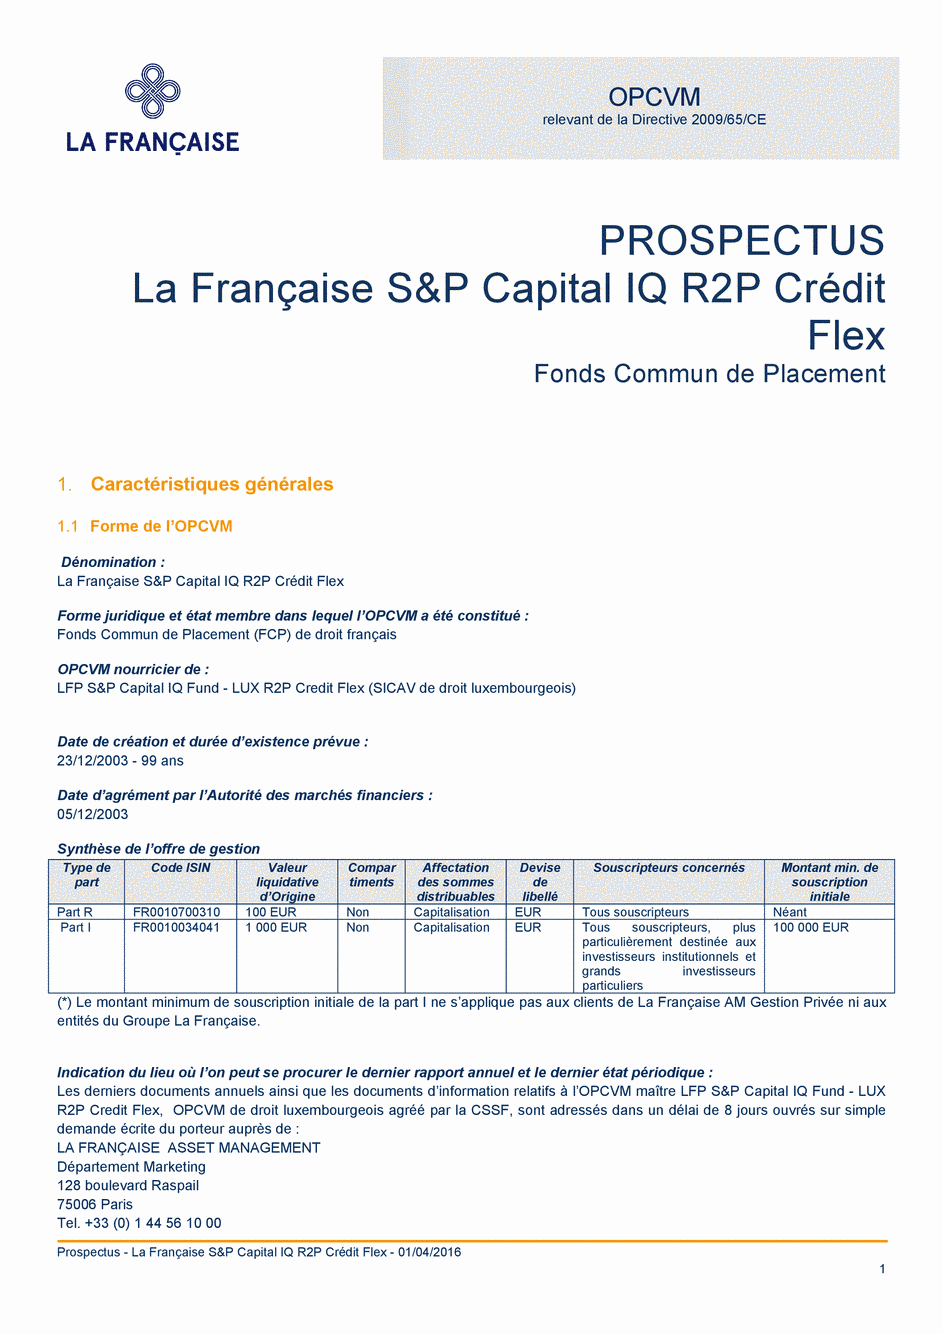 Prospectus La Française S&P Capital IQ R2P Crédit Flex - Part I - 01/04/2016 - Français